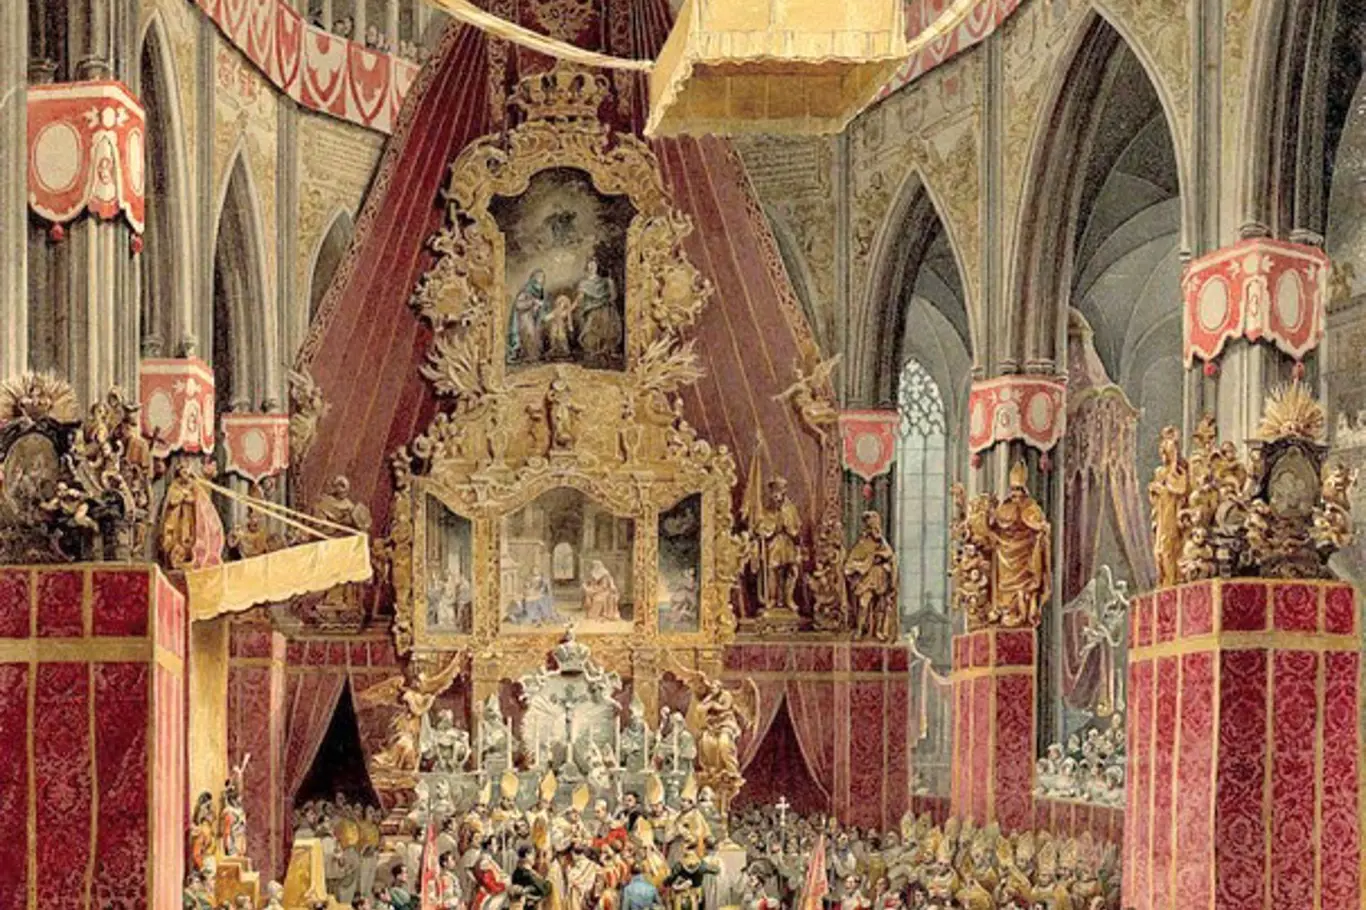 Korunovace Ferdinanda V. ve svatovítské katedrále v Praze